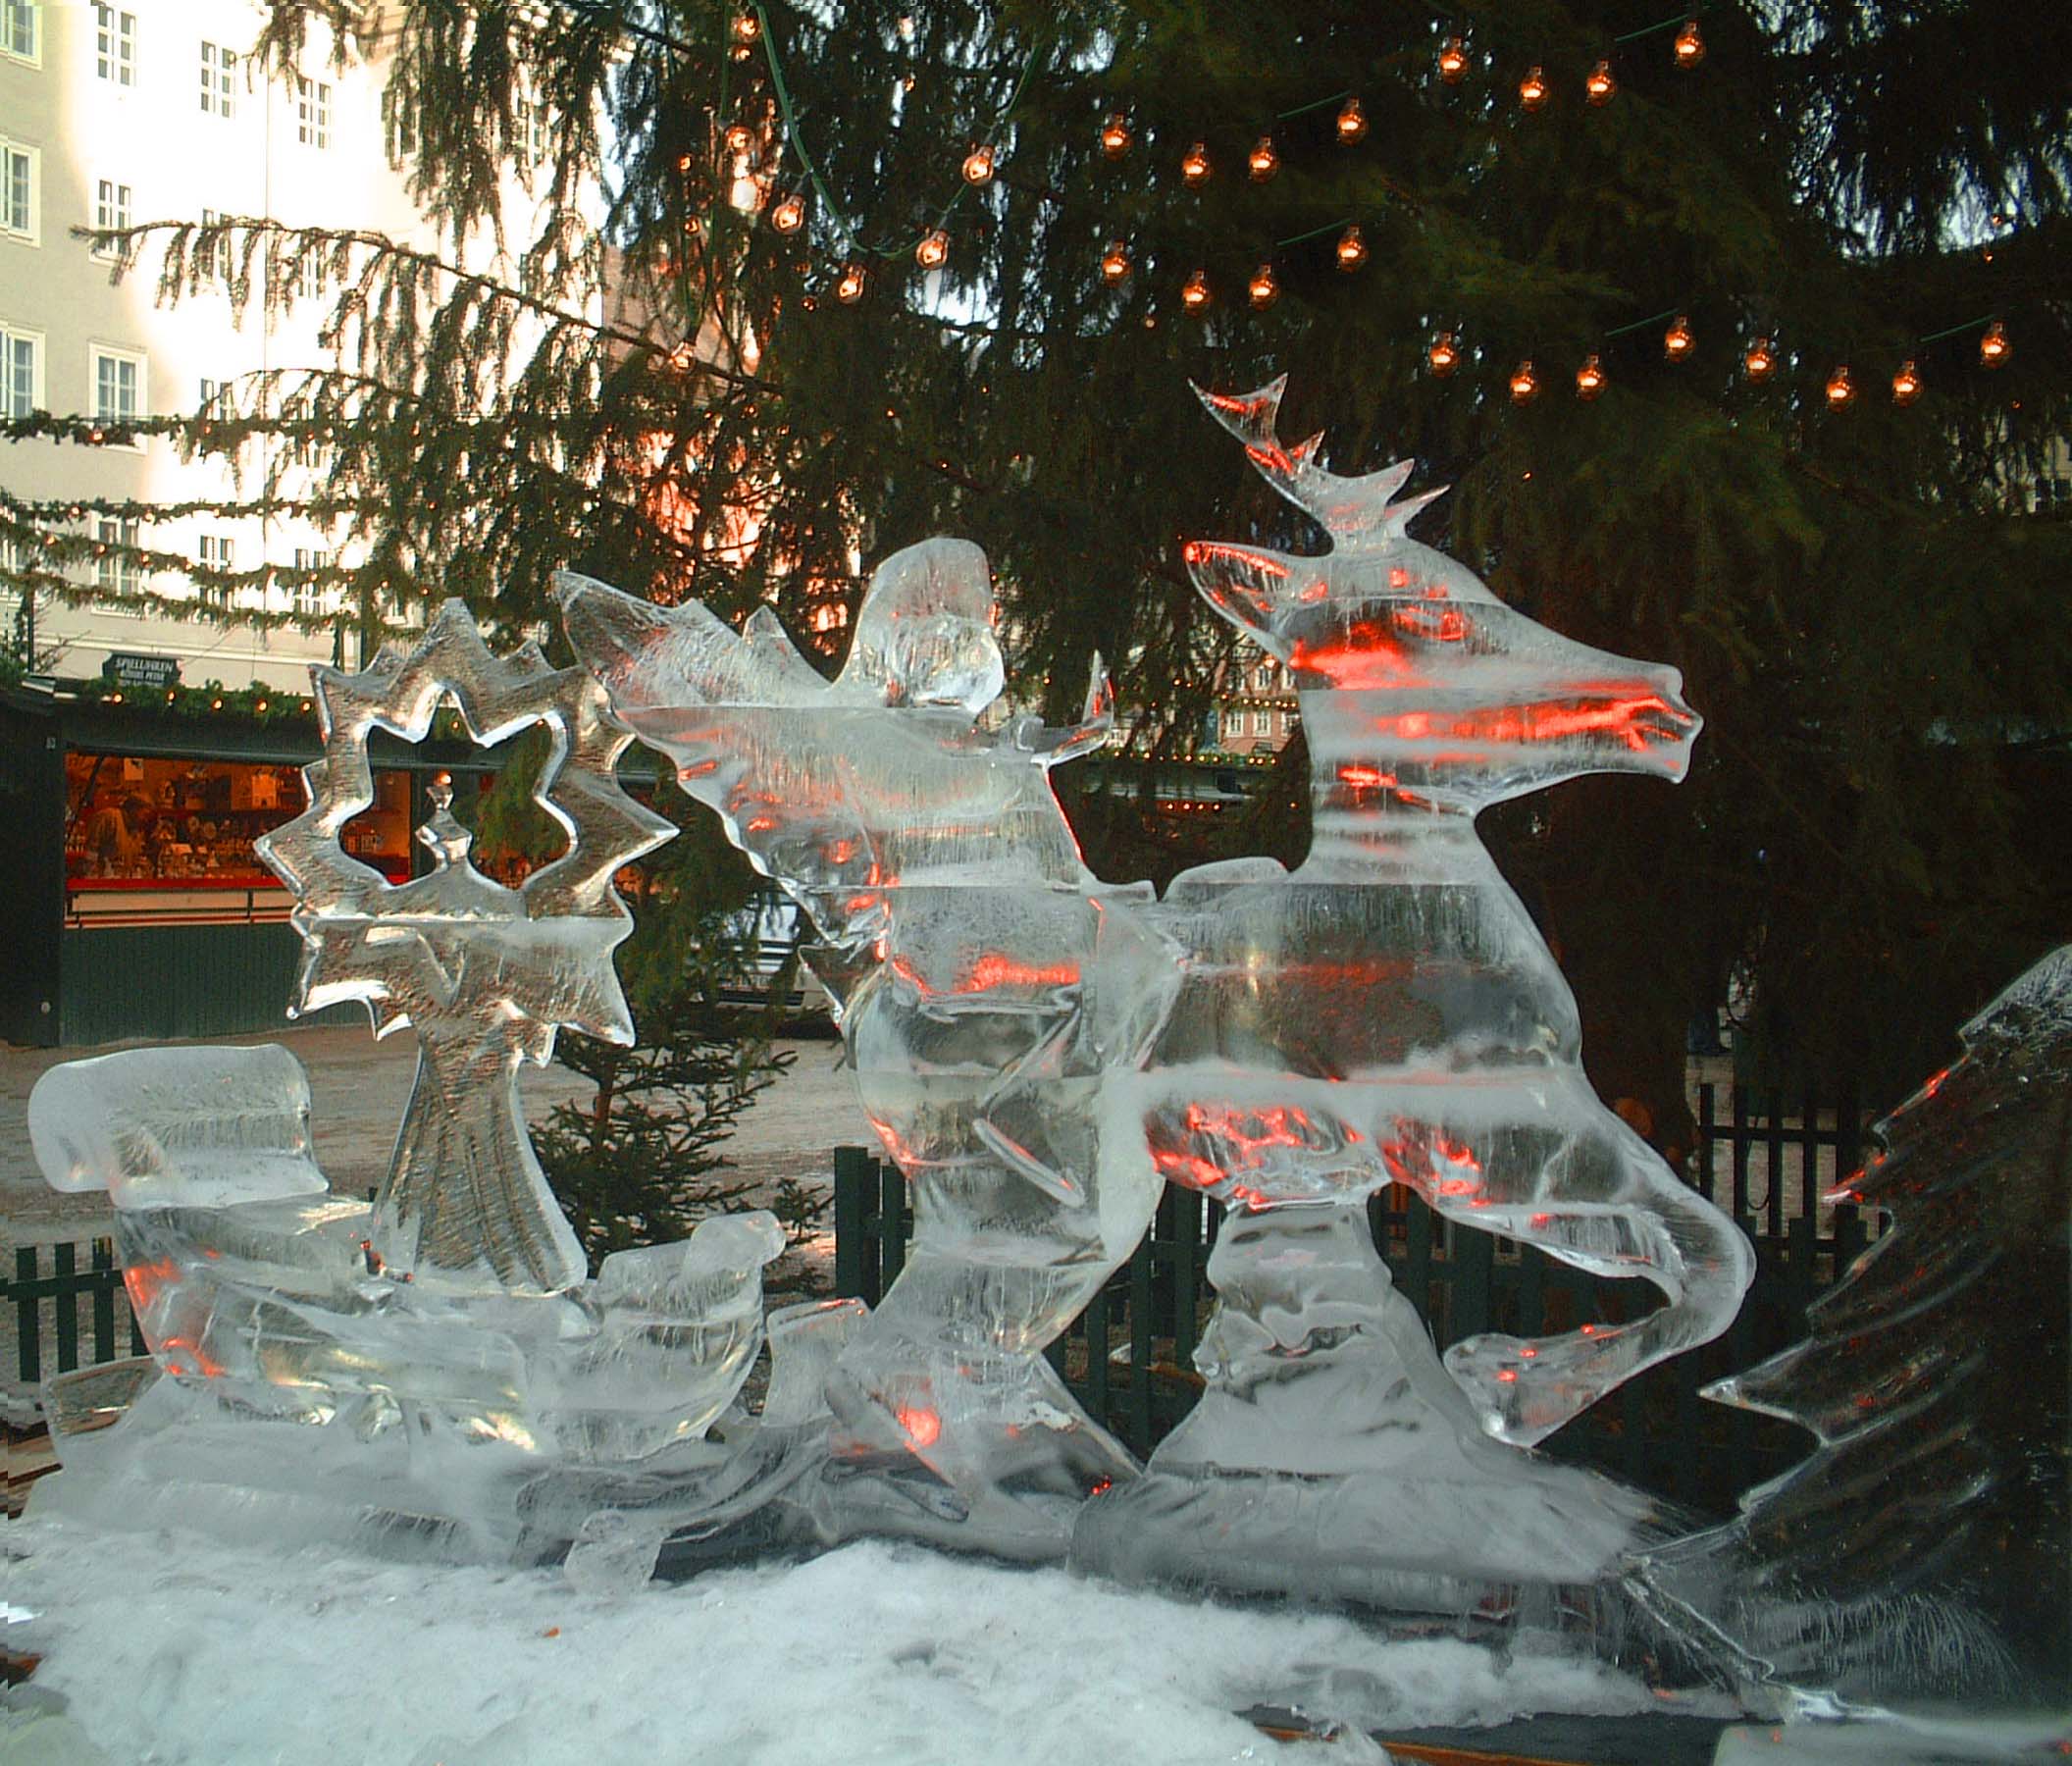 Glowing Ice Sculpture Saltzburg Christmas Markets Austria.jpg